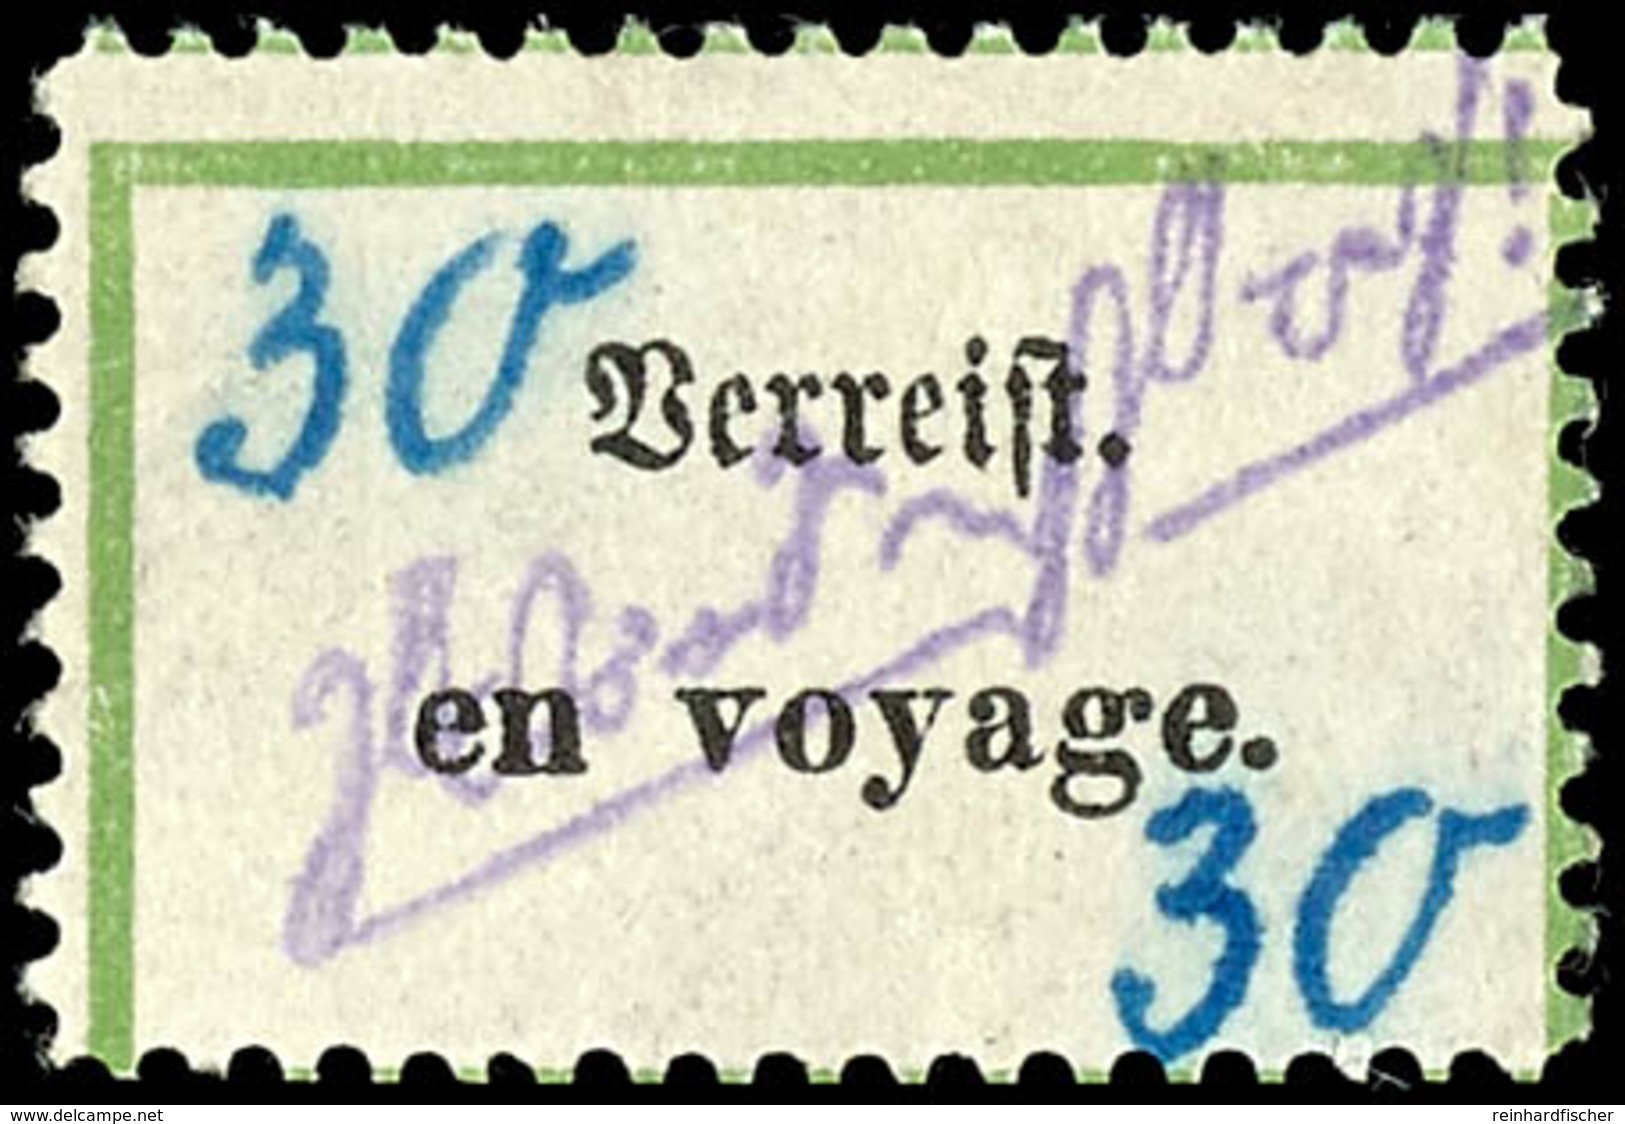 30 Pfg Postzettel "Verreist - En Voyage", Tadellos Ungebraucht, Gepr. Sturm, Mi. 250.-, Katalog: V6h * - Grossräschen